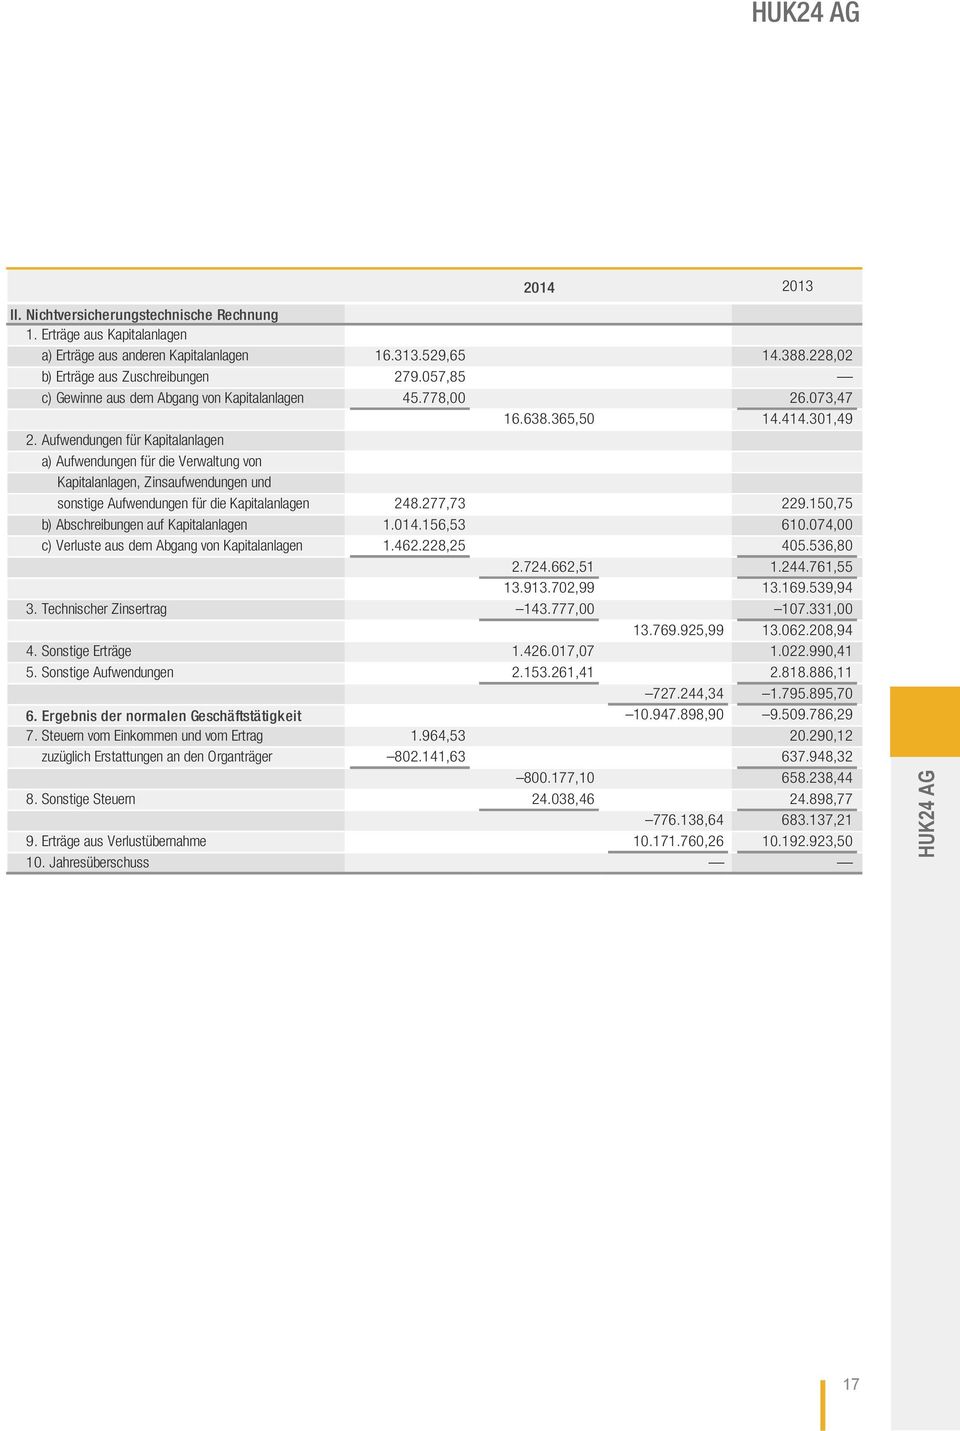 Aufwendungen für Kapitalanlagen a) Aufwendungen für die Verwaltung von Kapitalanlagen, Zinsaufwendungen und sonstige Aufwendungen für die Kapitalanlagen 248.277,73 229.